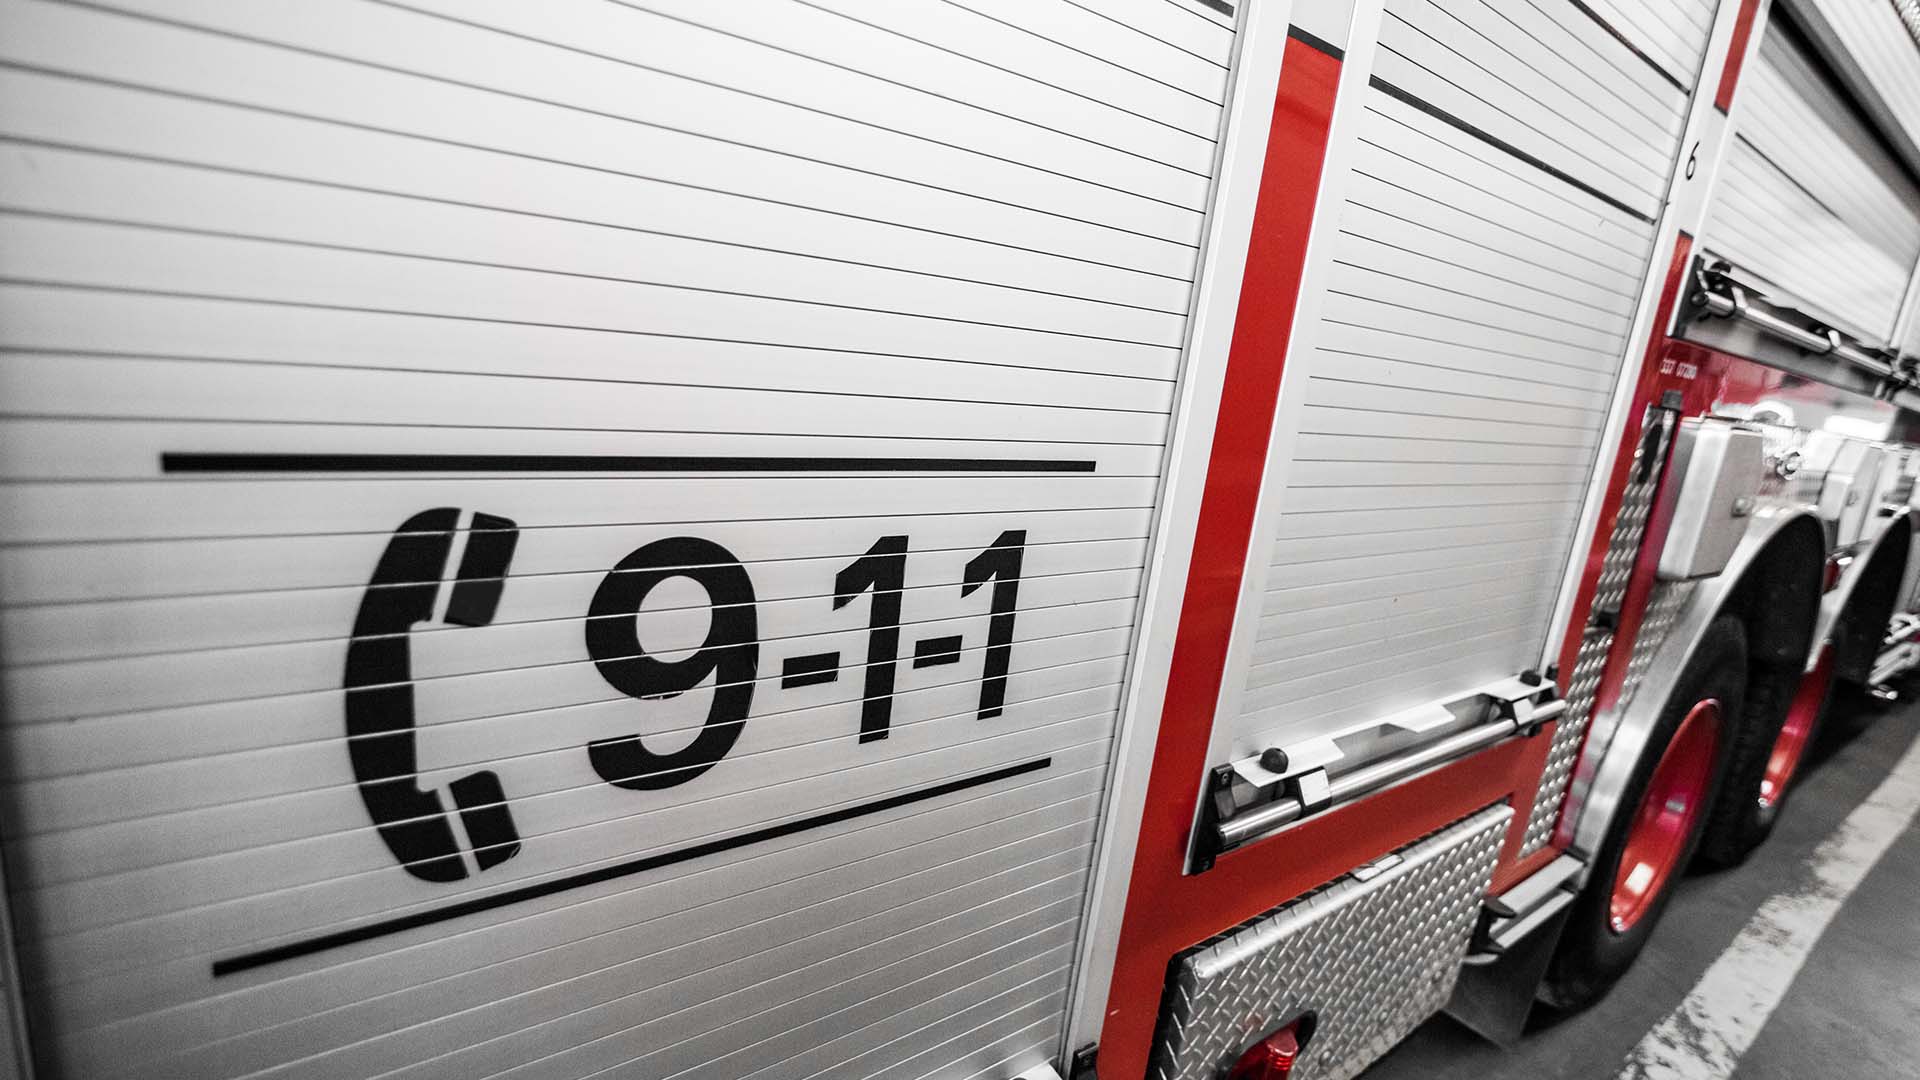 Un incendie de résidence a fait un blessé grave dans la nuit de mercredi à jeudi à Drummondville.